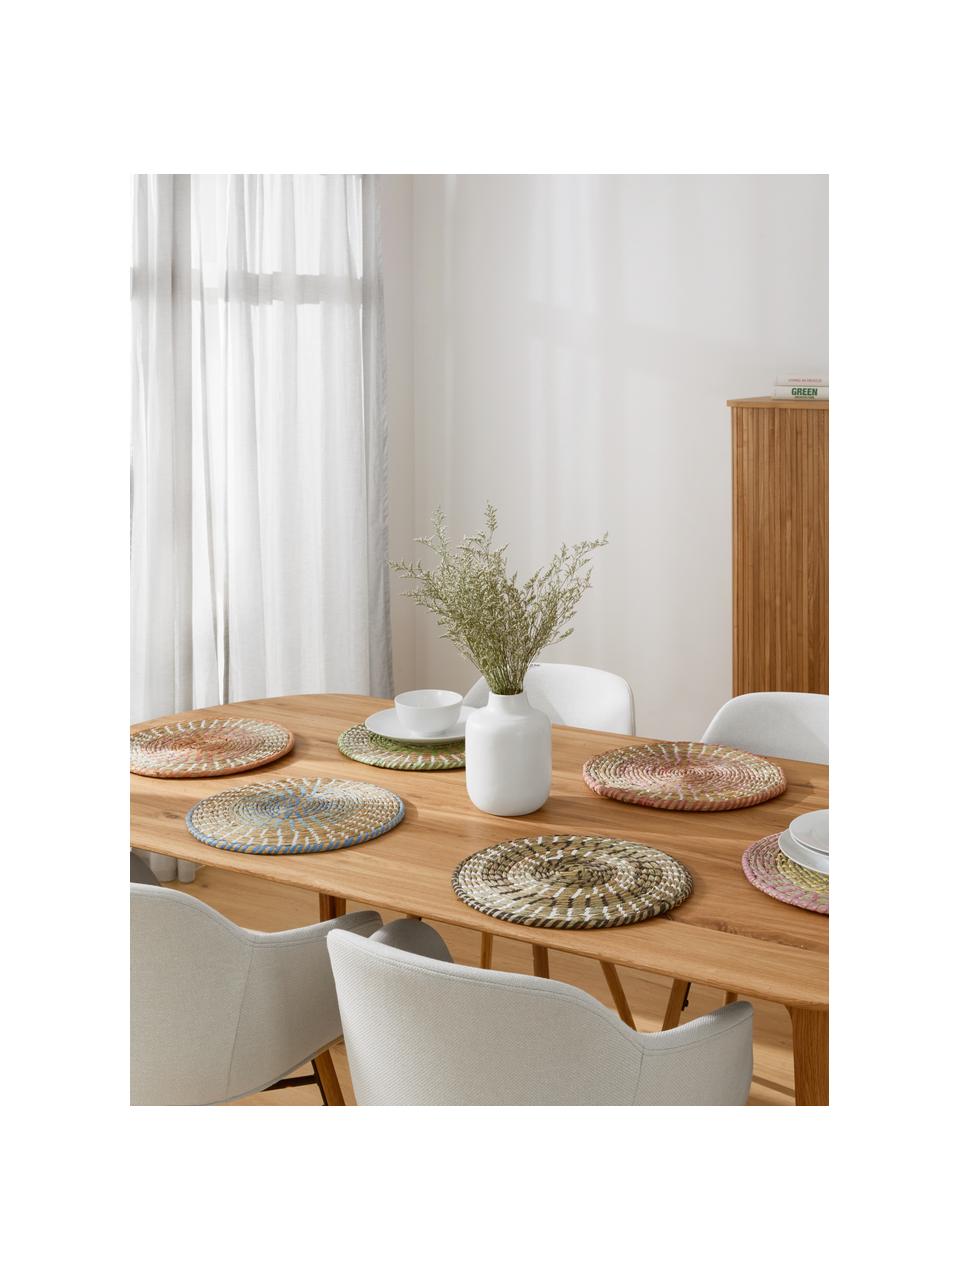 Runde Tischsets Mexico aus Naturfasern, 6er Set, Stroh, Mehrfarbig, Ø 38 cm